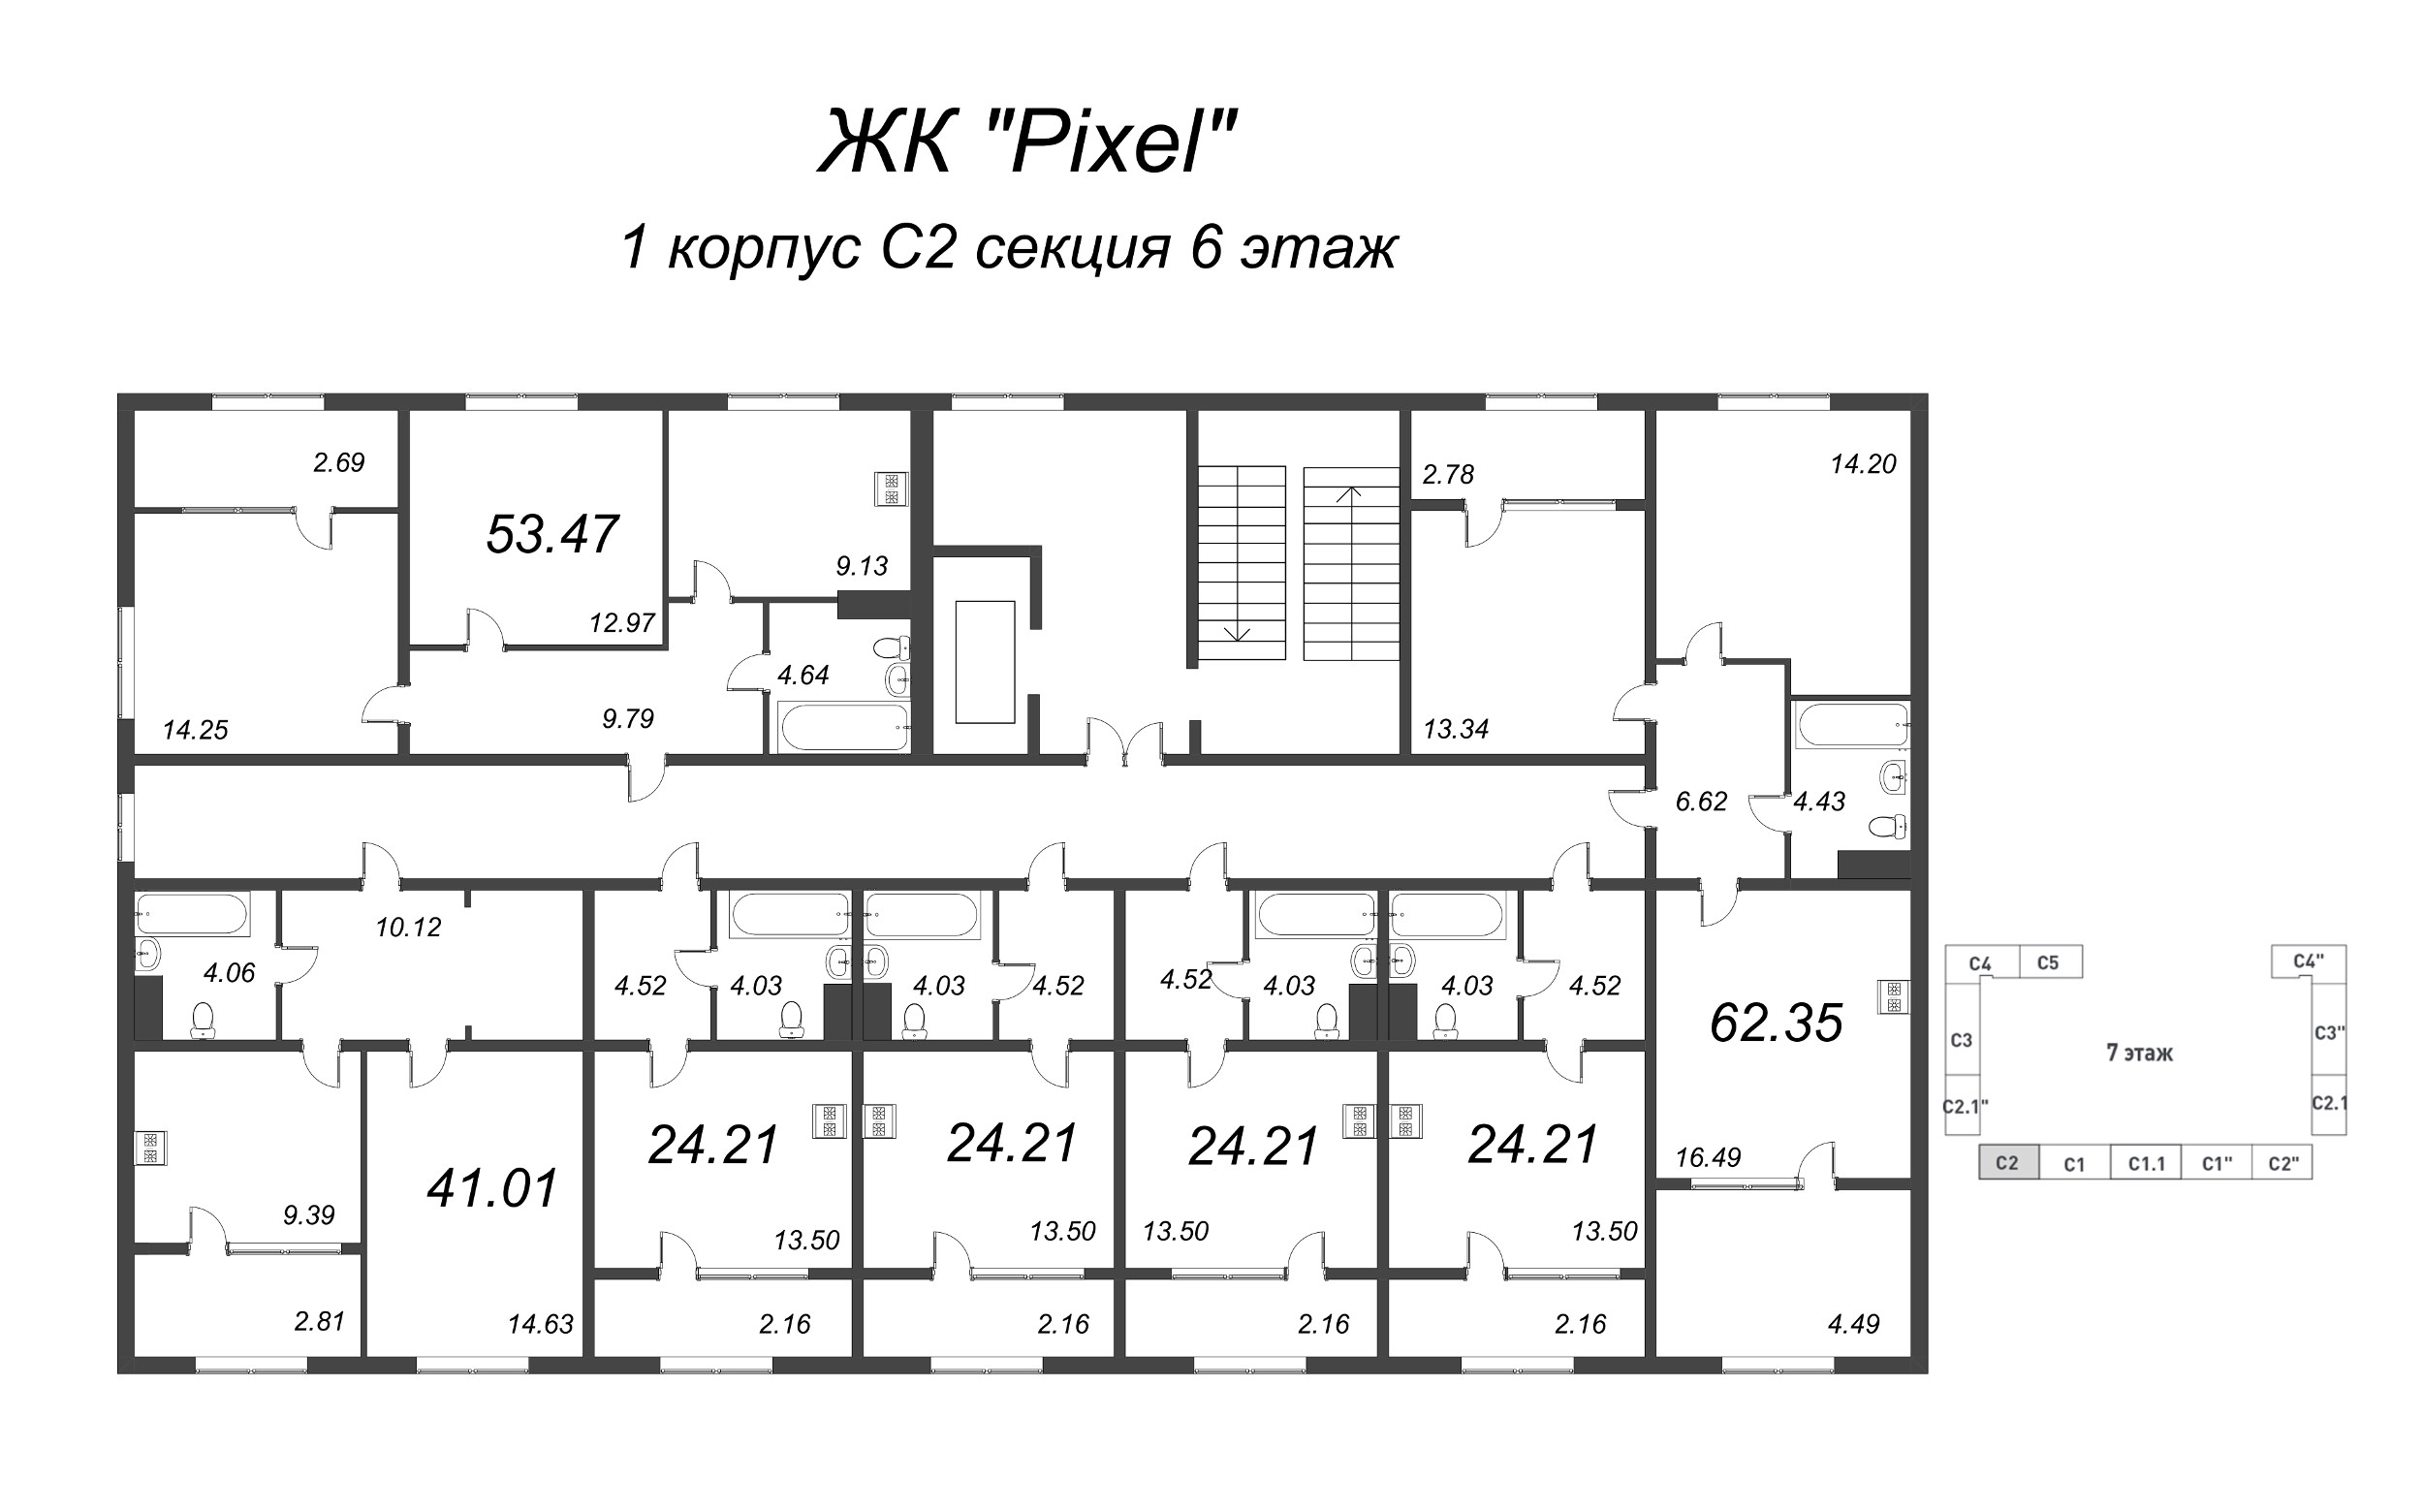 1-комнатная квартира, 41.01 м² в ЖК "Pixel" - планировка этажа